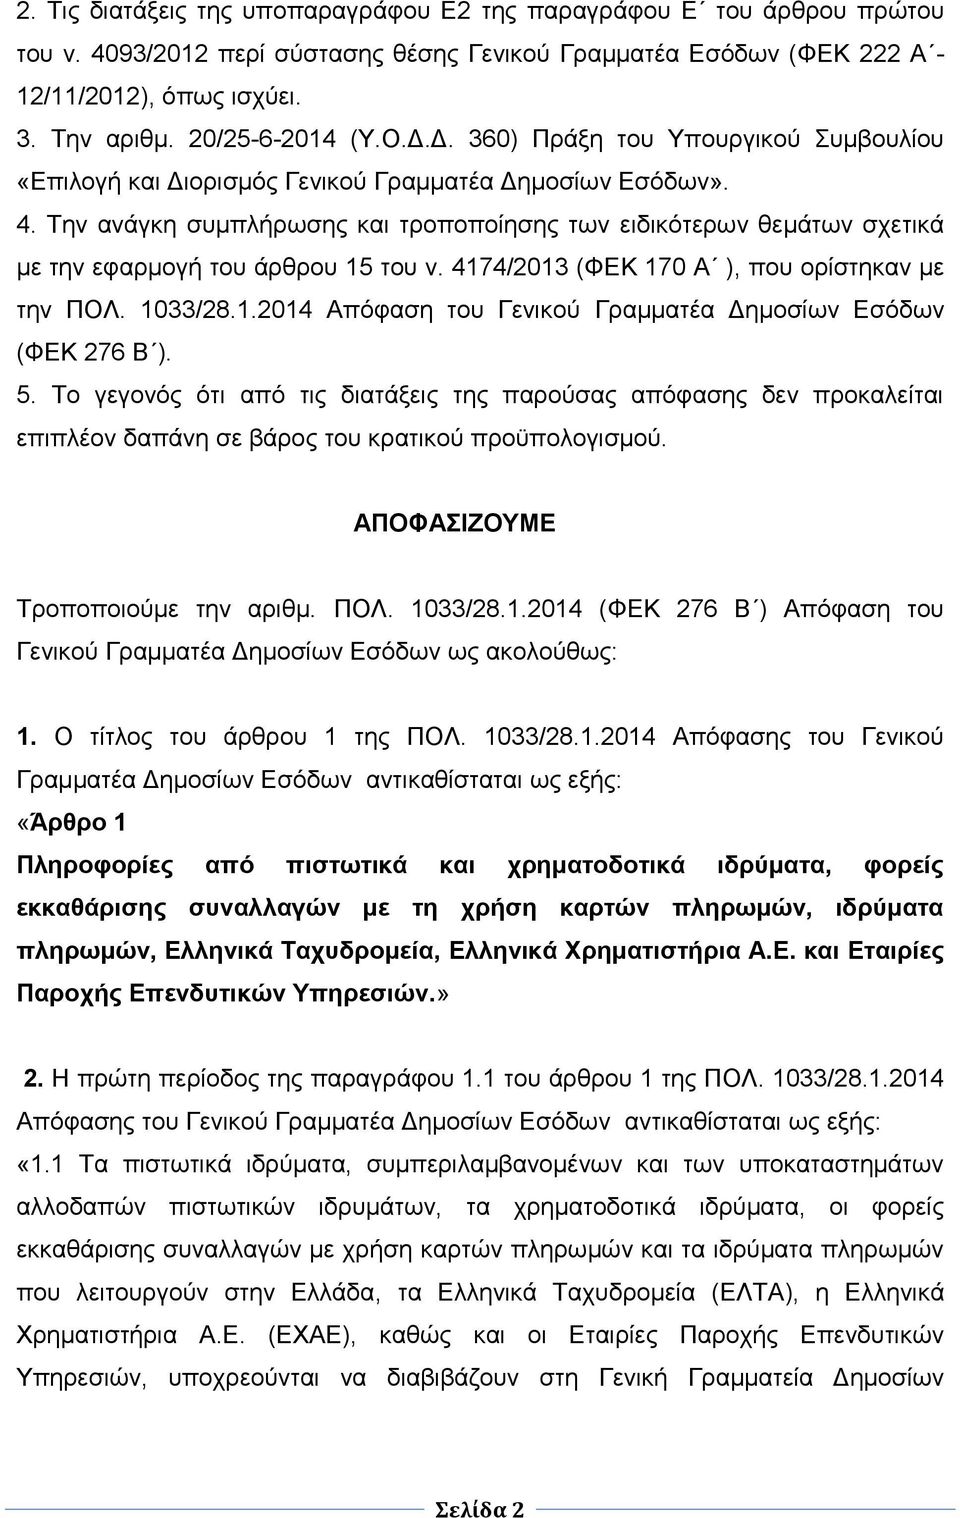 Την ανάγκη συμπλήρωσης και τροποποίησης των ειδικότερων θεμάτων σχετικά με την εφαρμογή του άρθρου 15 του ν. 4174/2013 (ΦΕΚ 170 Α ), που ορίστηκαν με την ΠΟΛ. 1033/28.1.2014 Απόφαση του Γενικού Γραμματέα Δημοσίων Εσόδων (ΦΕΚ 276 Β ).